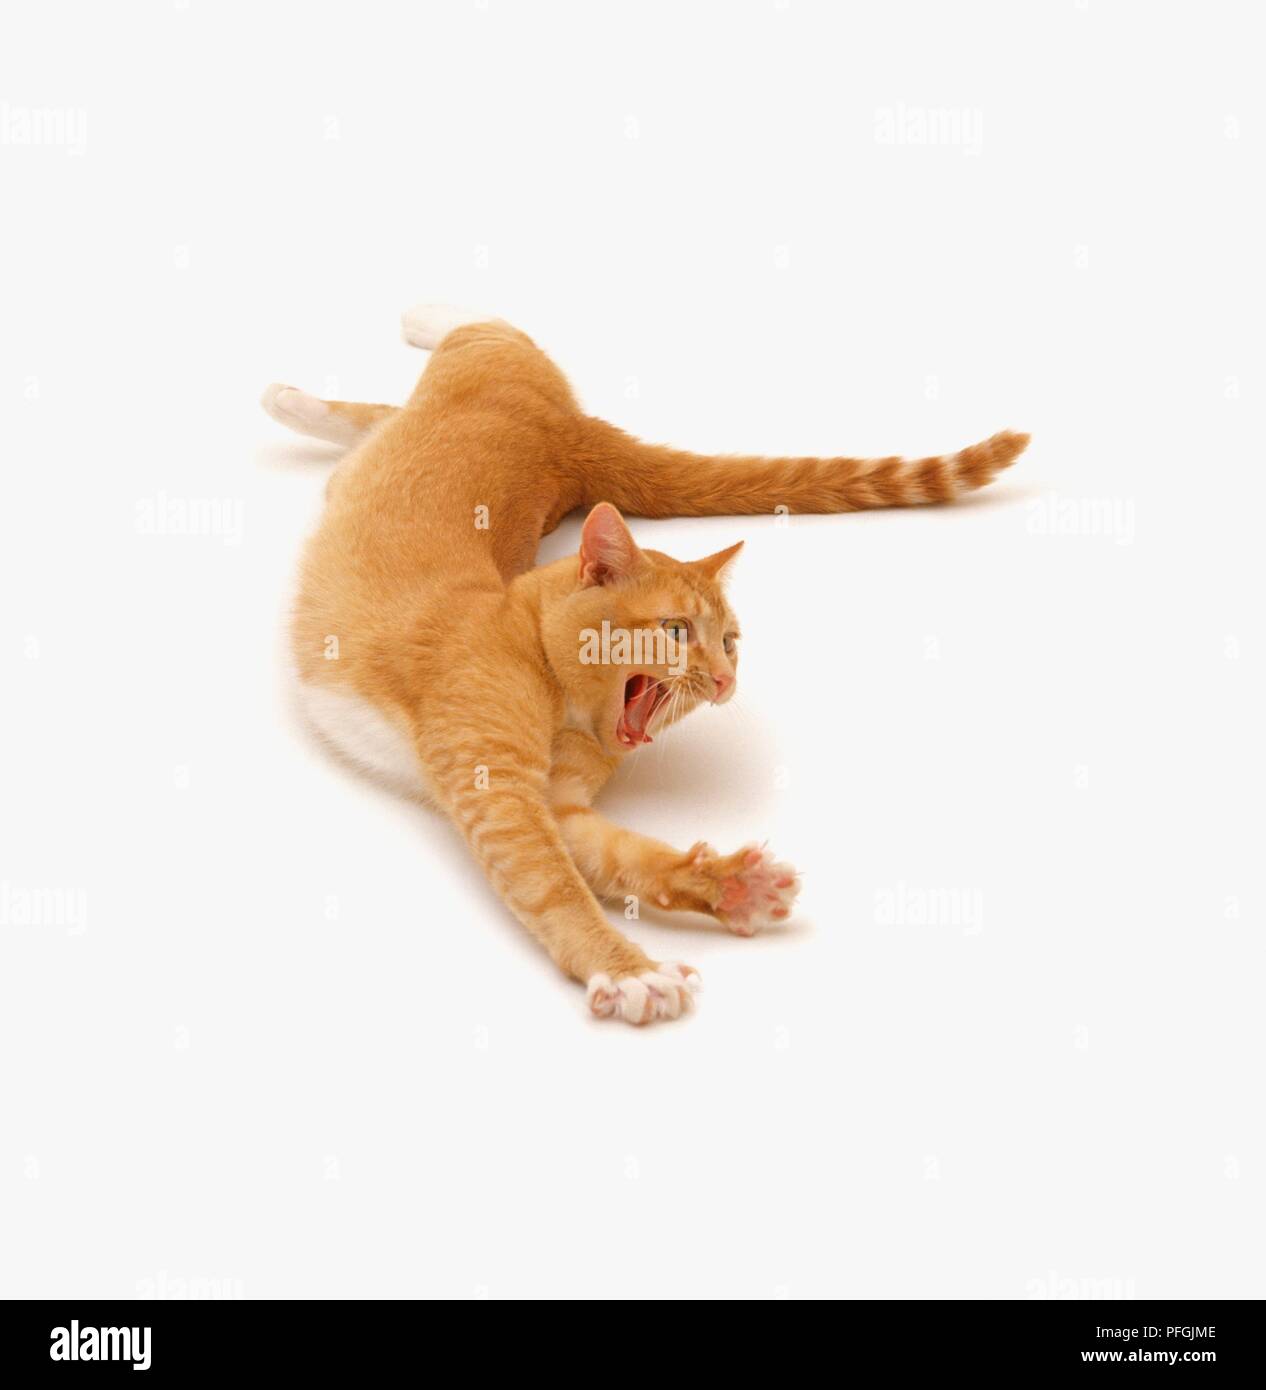 Le gingembre cat stretching avec sa bouche grande ouverte, close-up Banque D'Images